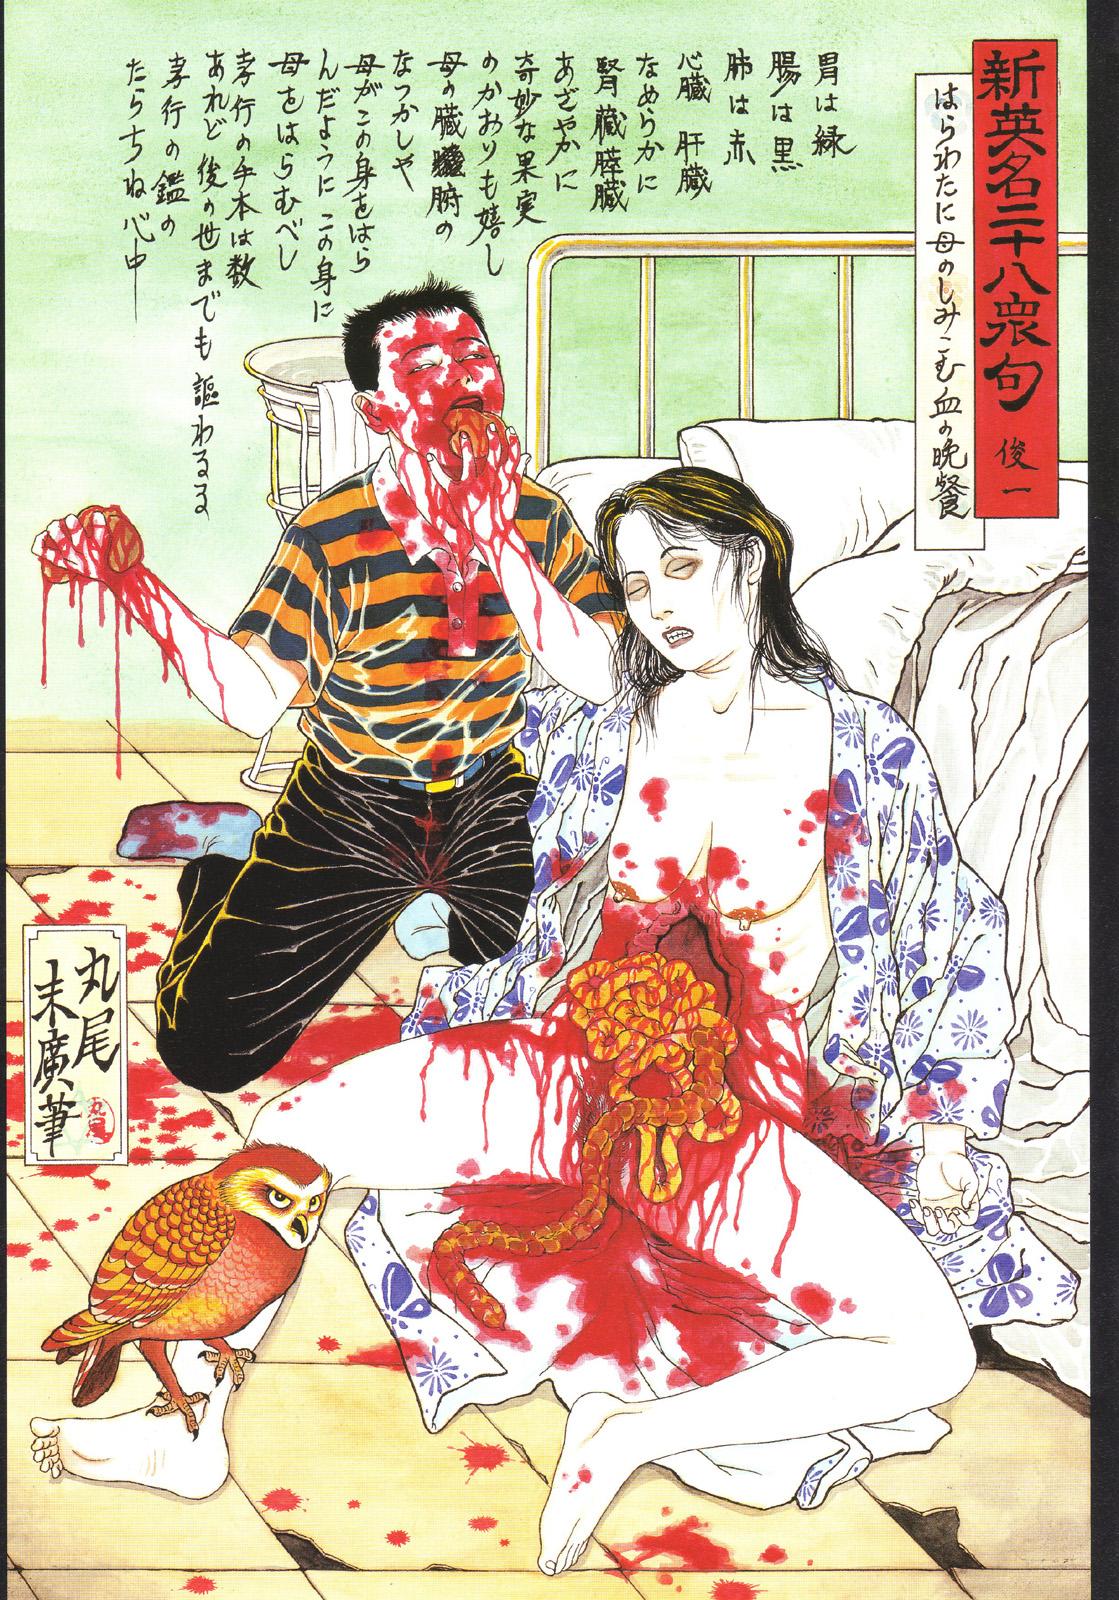 江戸昭和競作 - Bloody Ukiyo-e in 1866 & 1988 38